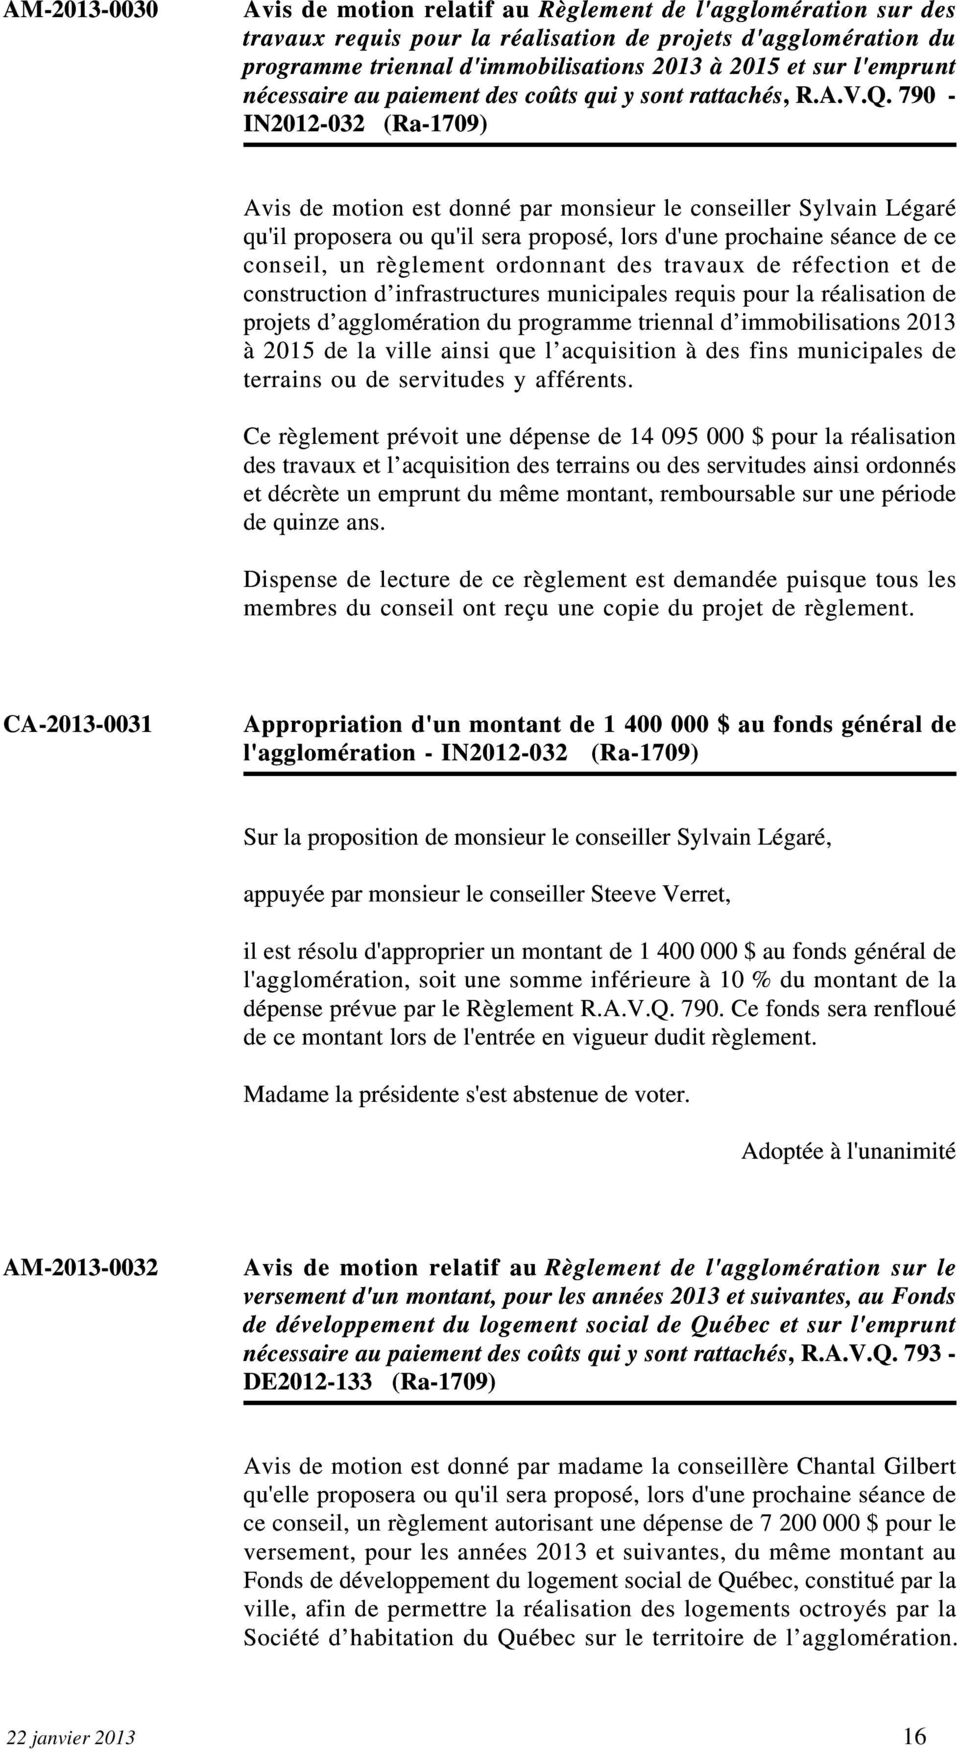 790 - IN2012-032 (Ra-1709) Avis de motion est donné par monsieur le conseiller Sylvain Légaré qu'il proposera ou qu'il sera proposé, lors d'une prochaine séance de ce conseil, un règlement ordonnant